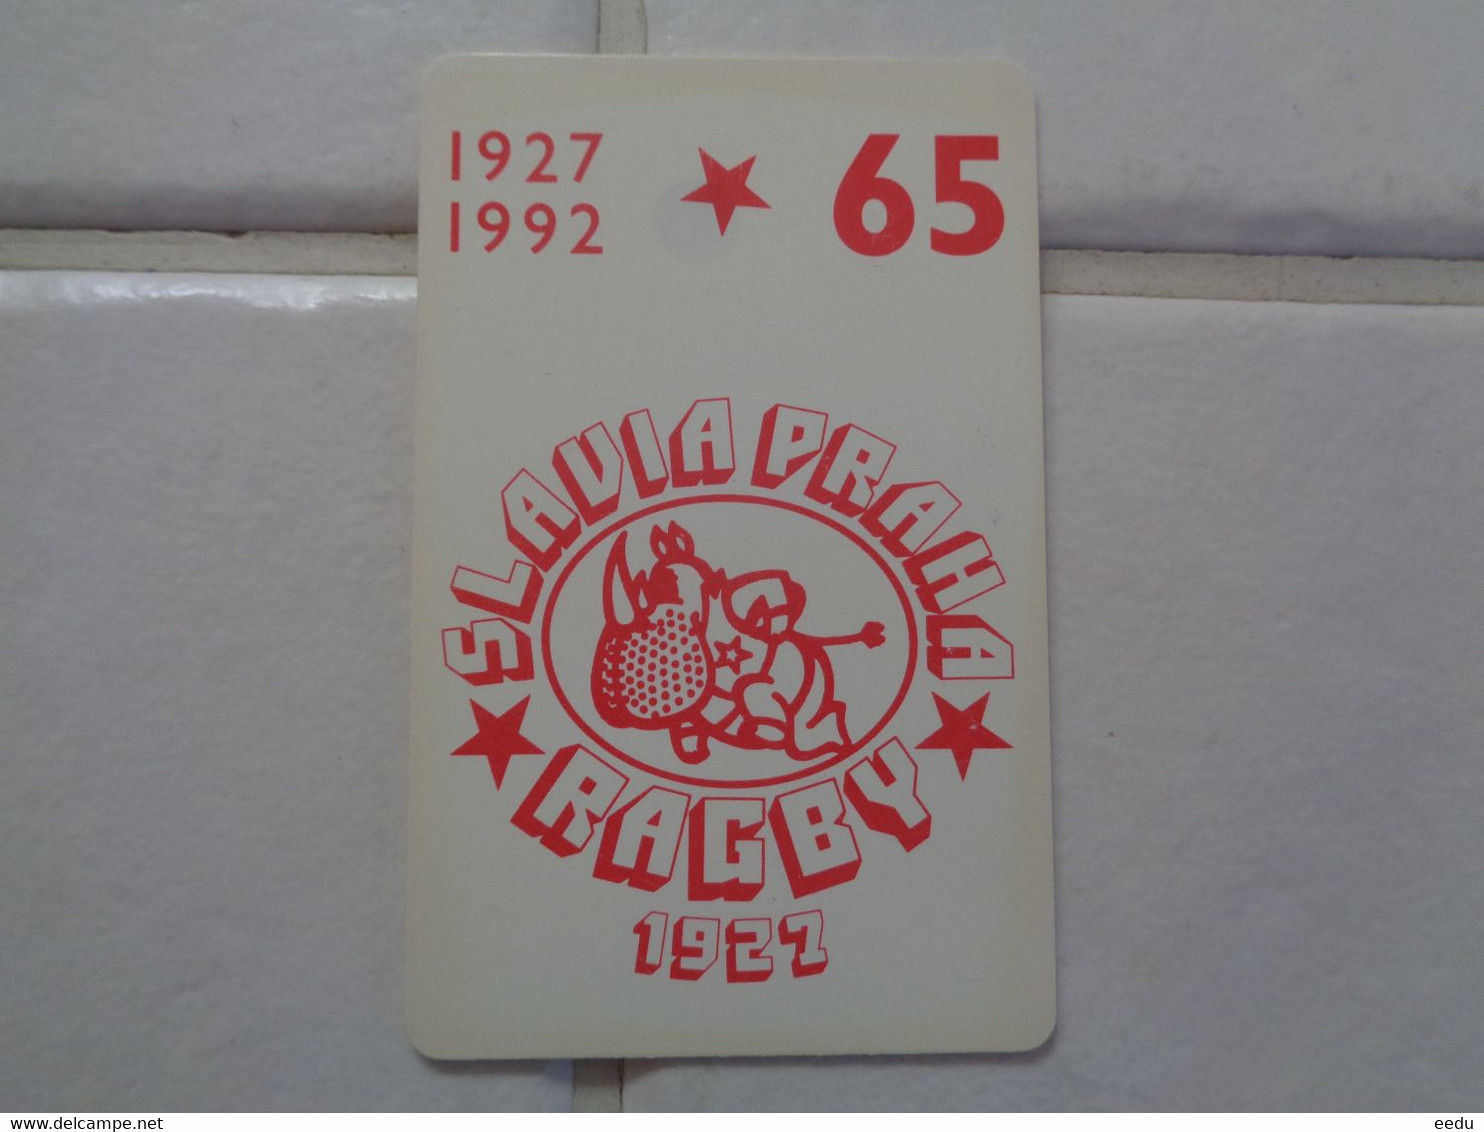 Czechoslovakia Phonecard - Tchécoslovaquie